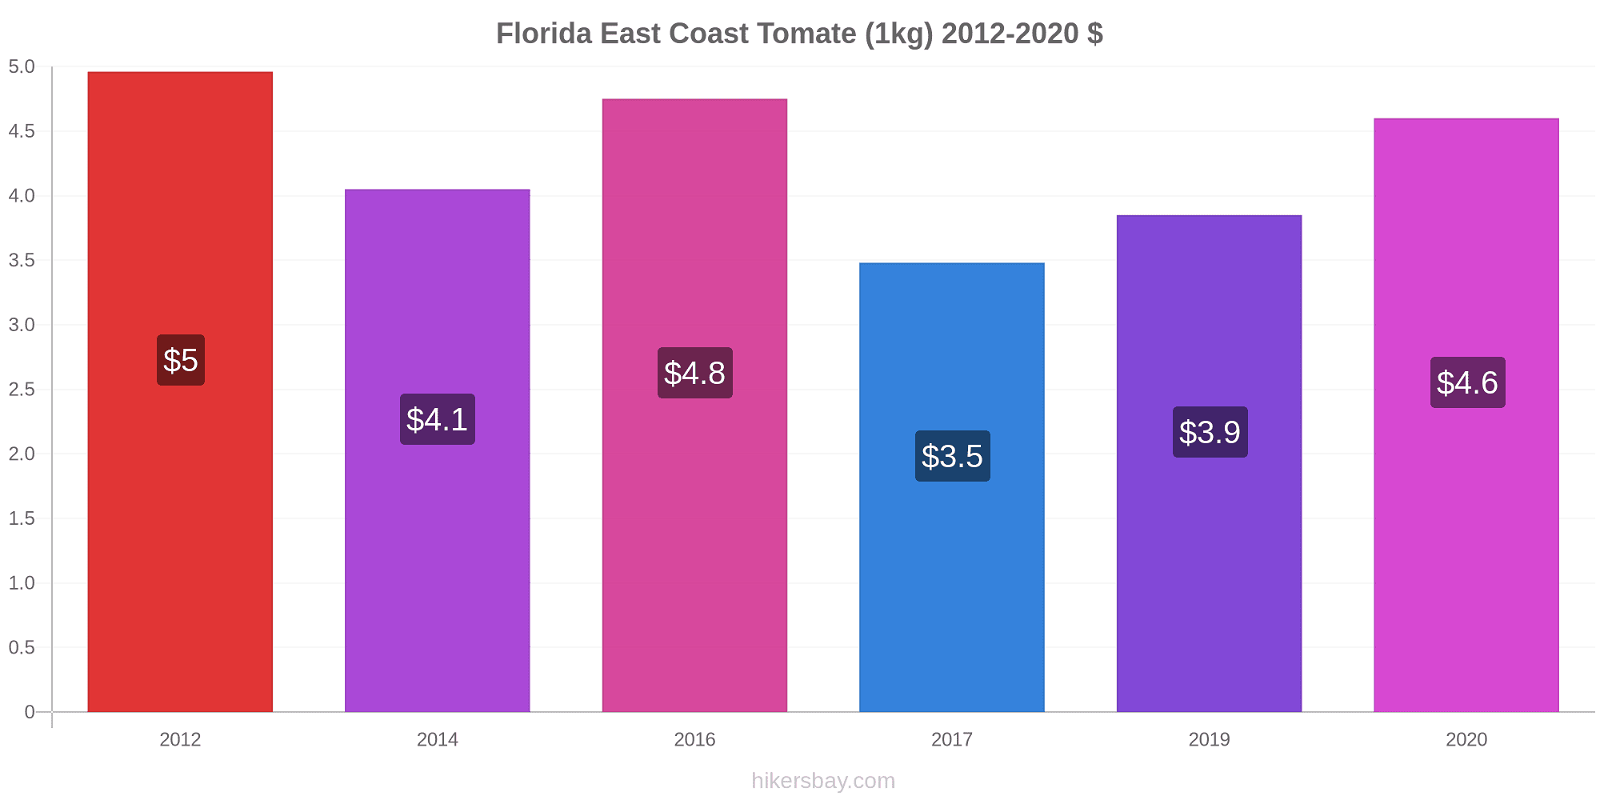 Florida East Coast variação de preço Tomate (1kg) hikersbay.com